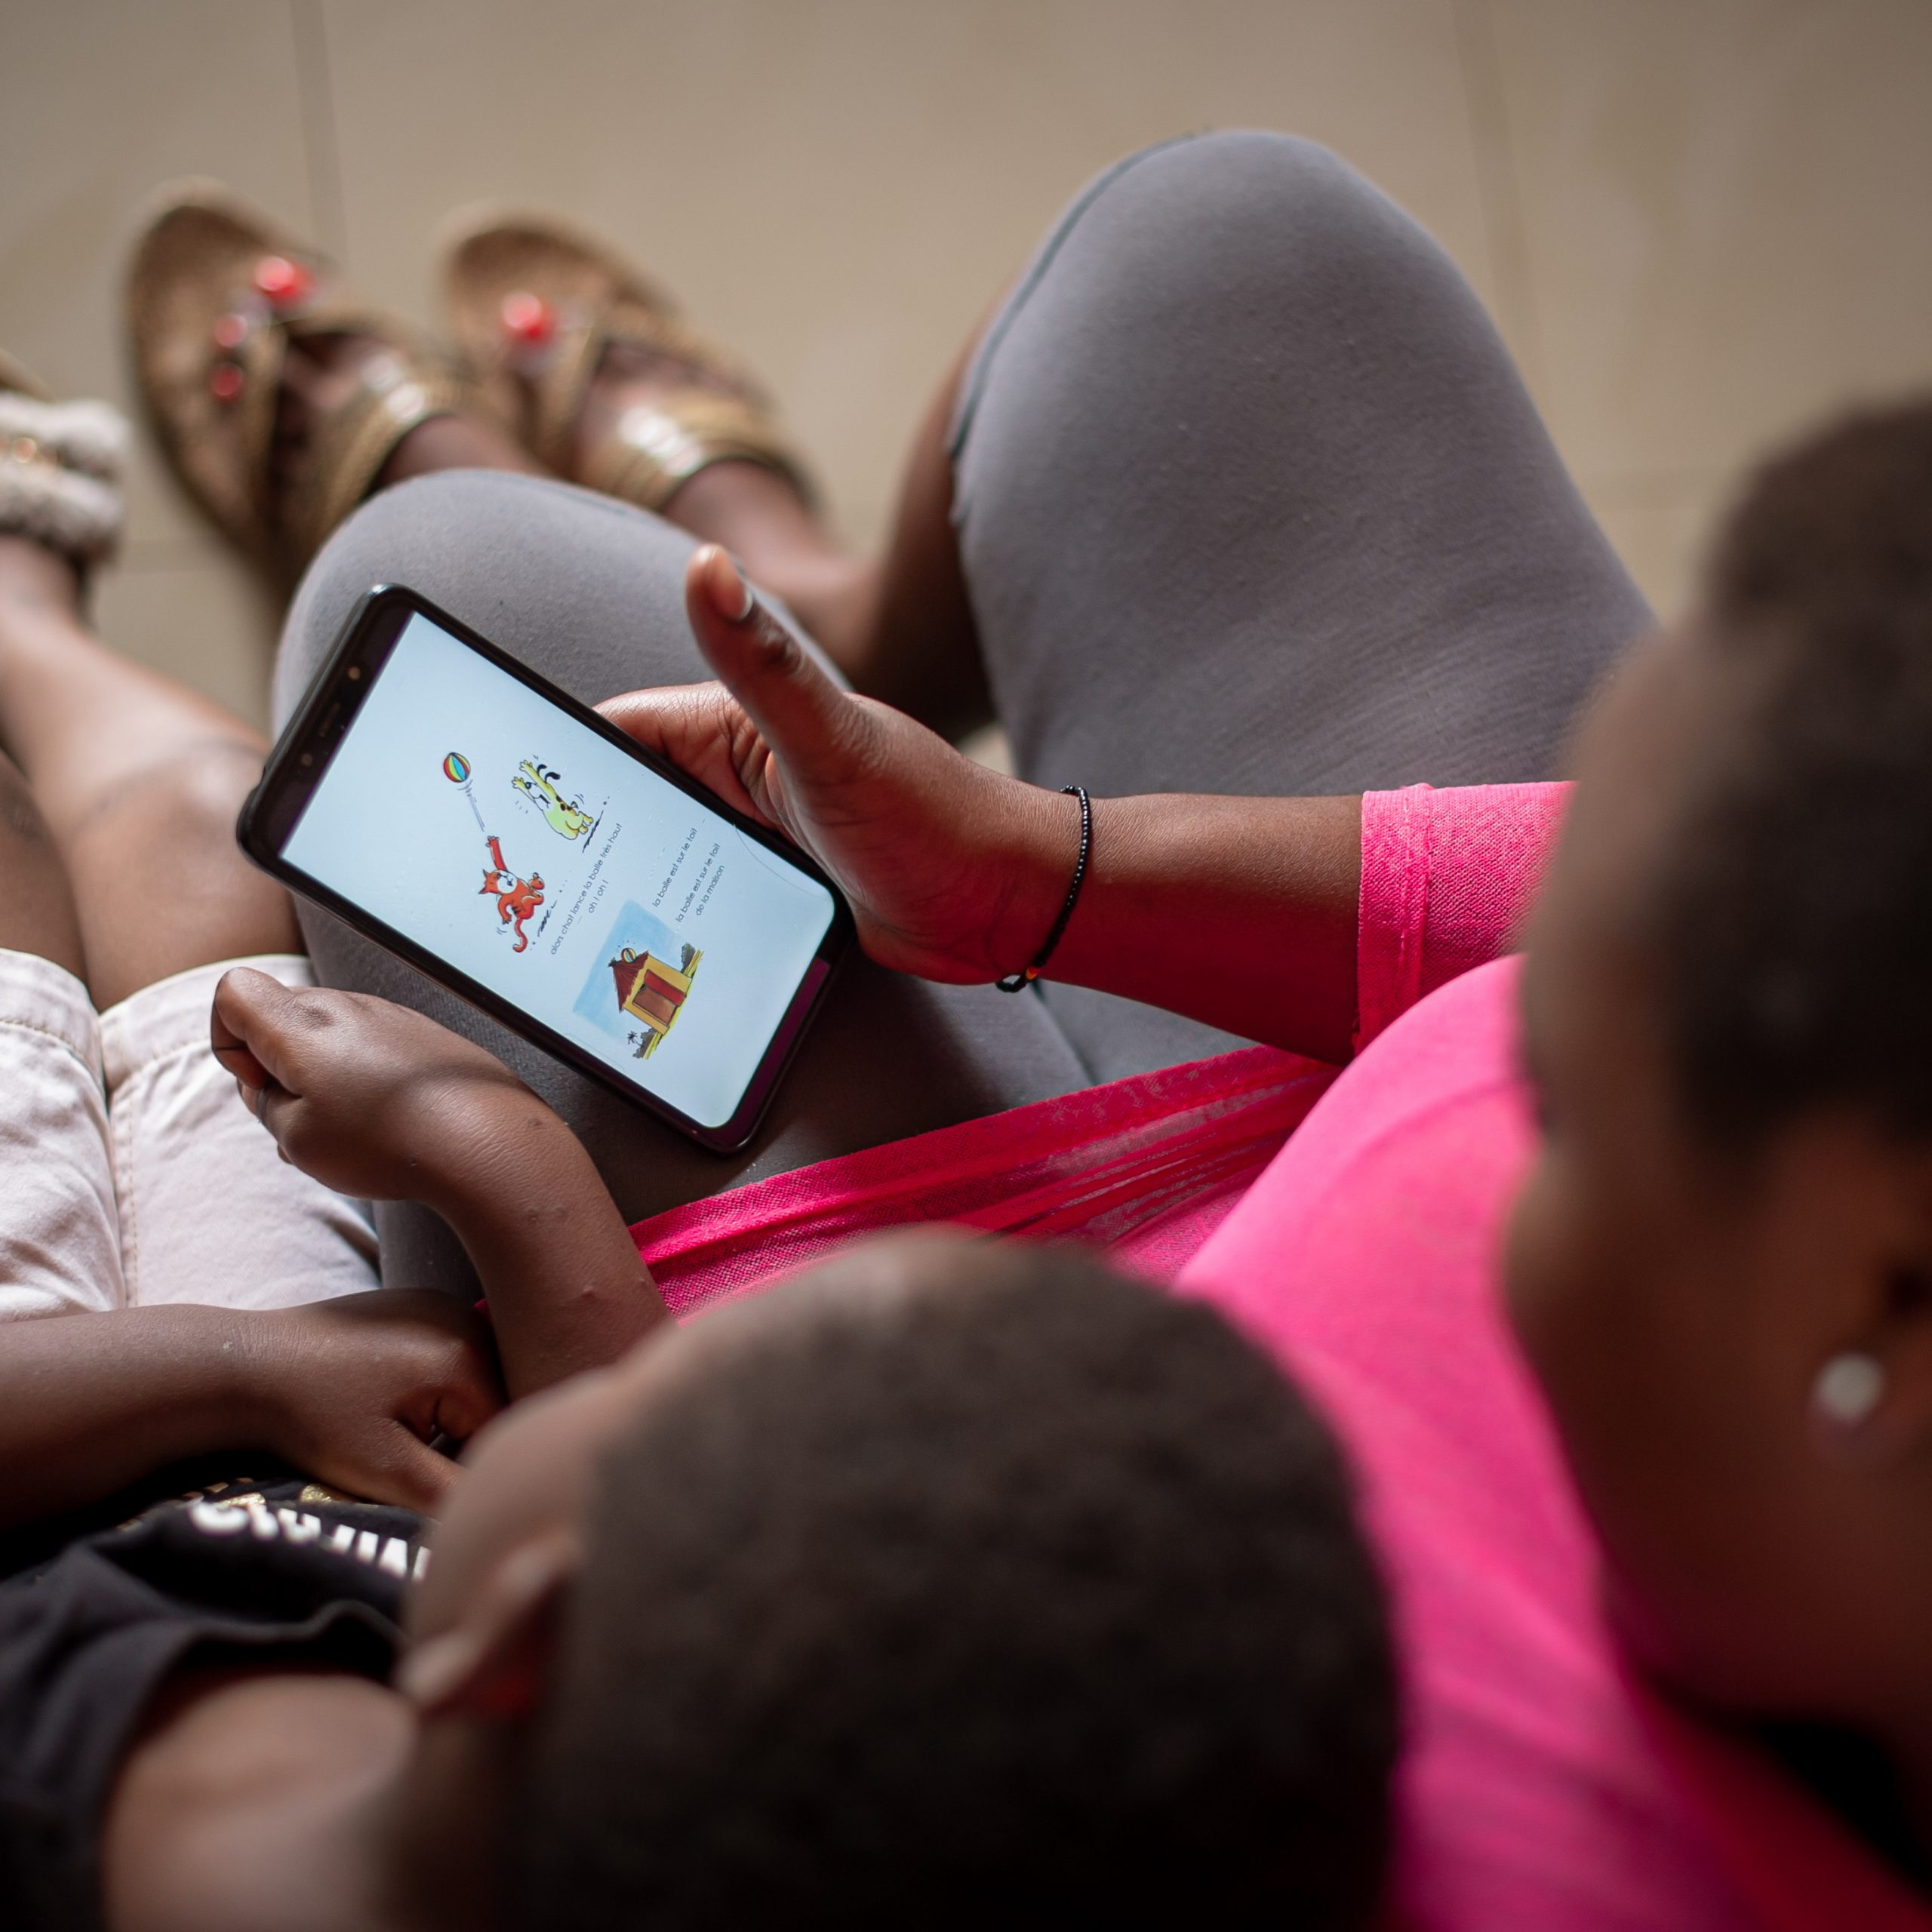 NABU Announces New Reading App for Children